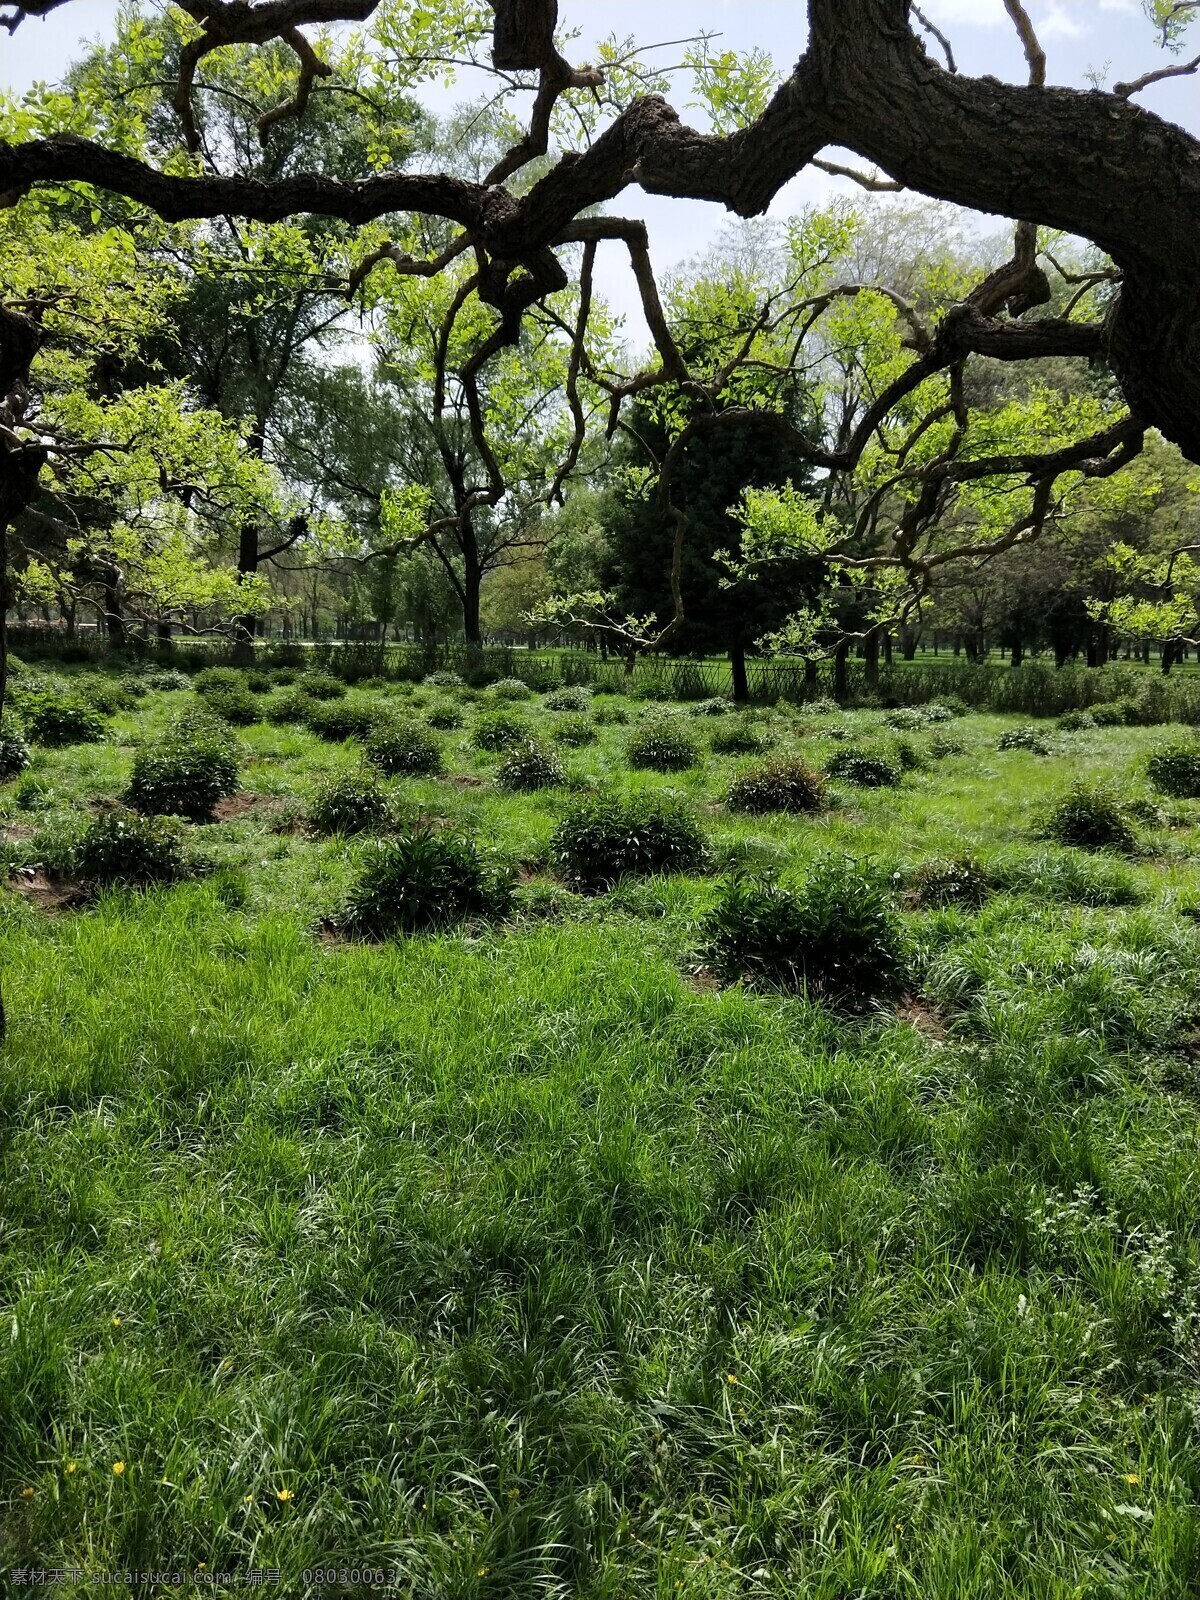 茂盛的草坪 草地 茂盛 绿色 树林 背景 阳光强烈 春天 树干 公园 绿草地 野餐草坪 自然景观 自然风景